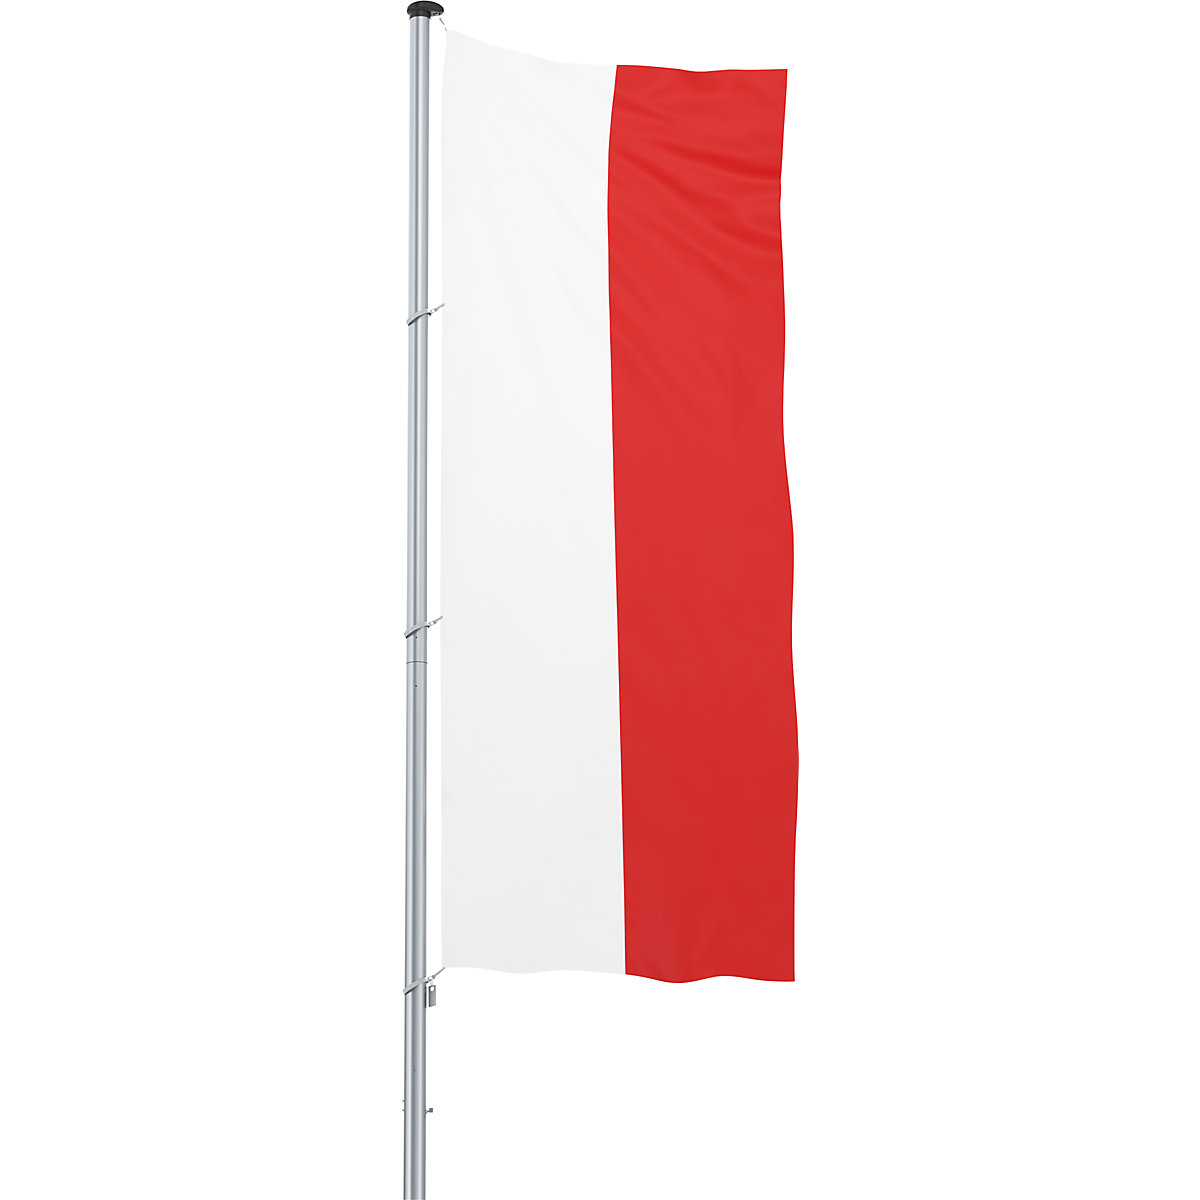 Vlajka pro vodorovné zavěšení/vlajka země – Mannus, formát 1,2 x 3 m, Polsko-31